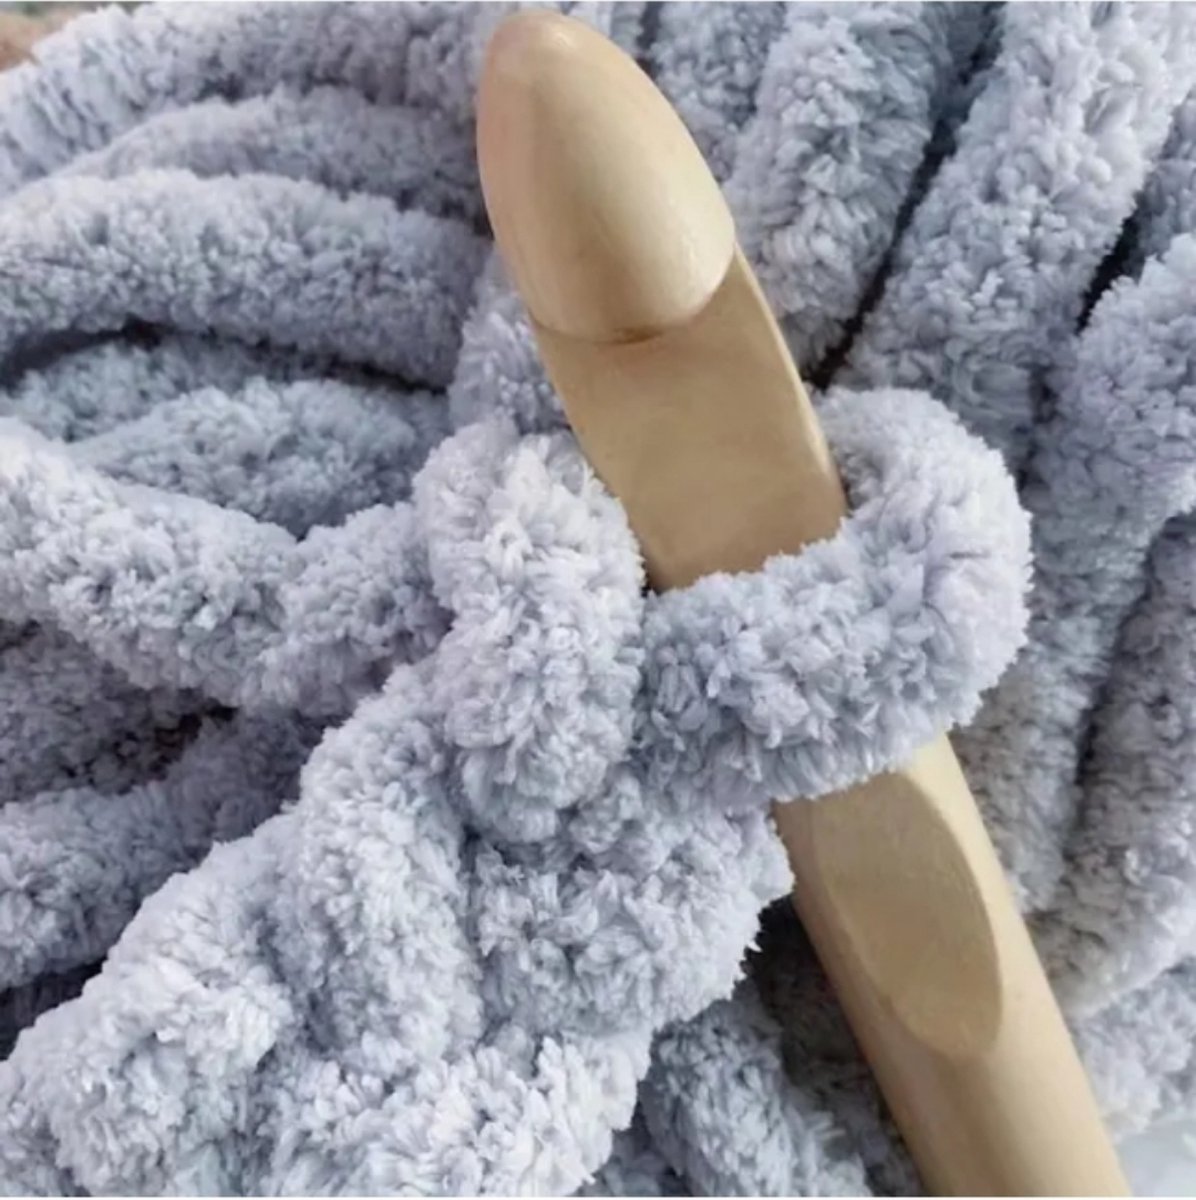 Aiguille à tricoter laine 14 cm x 0,5 cm